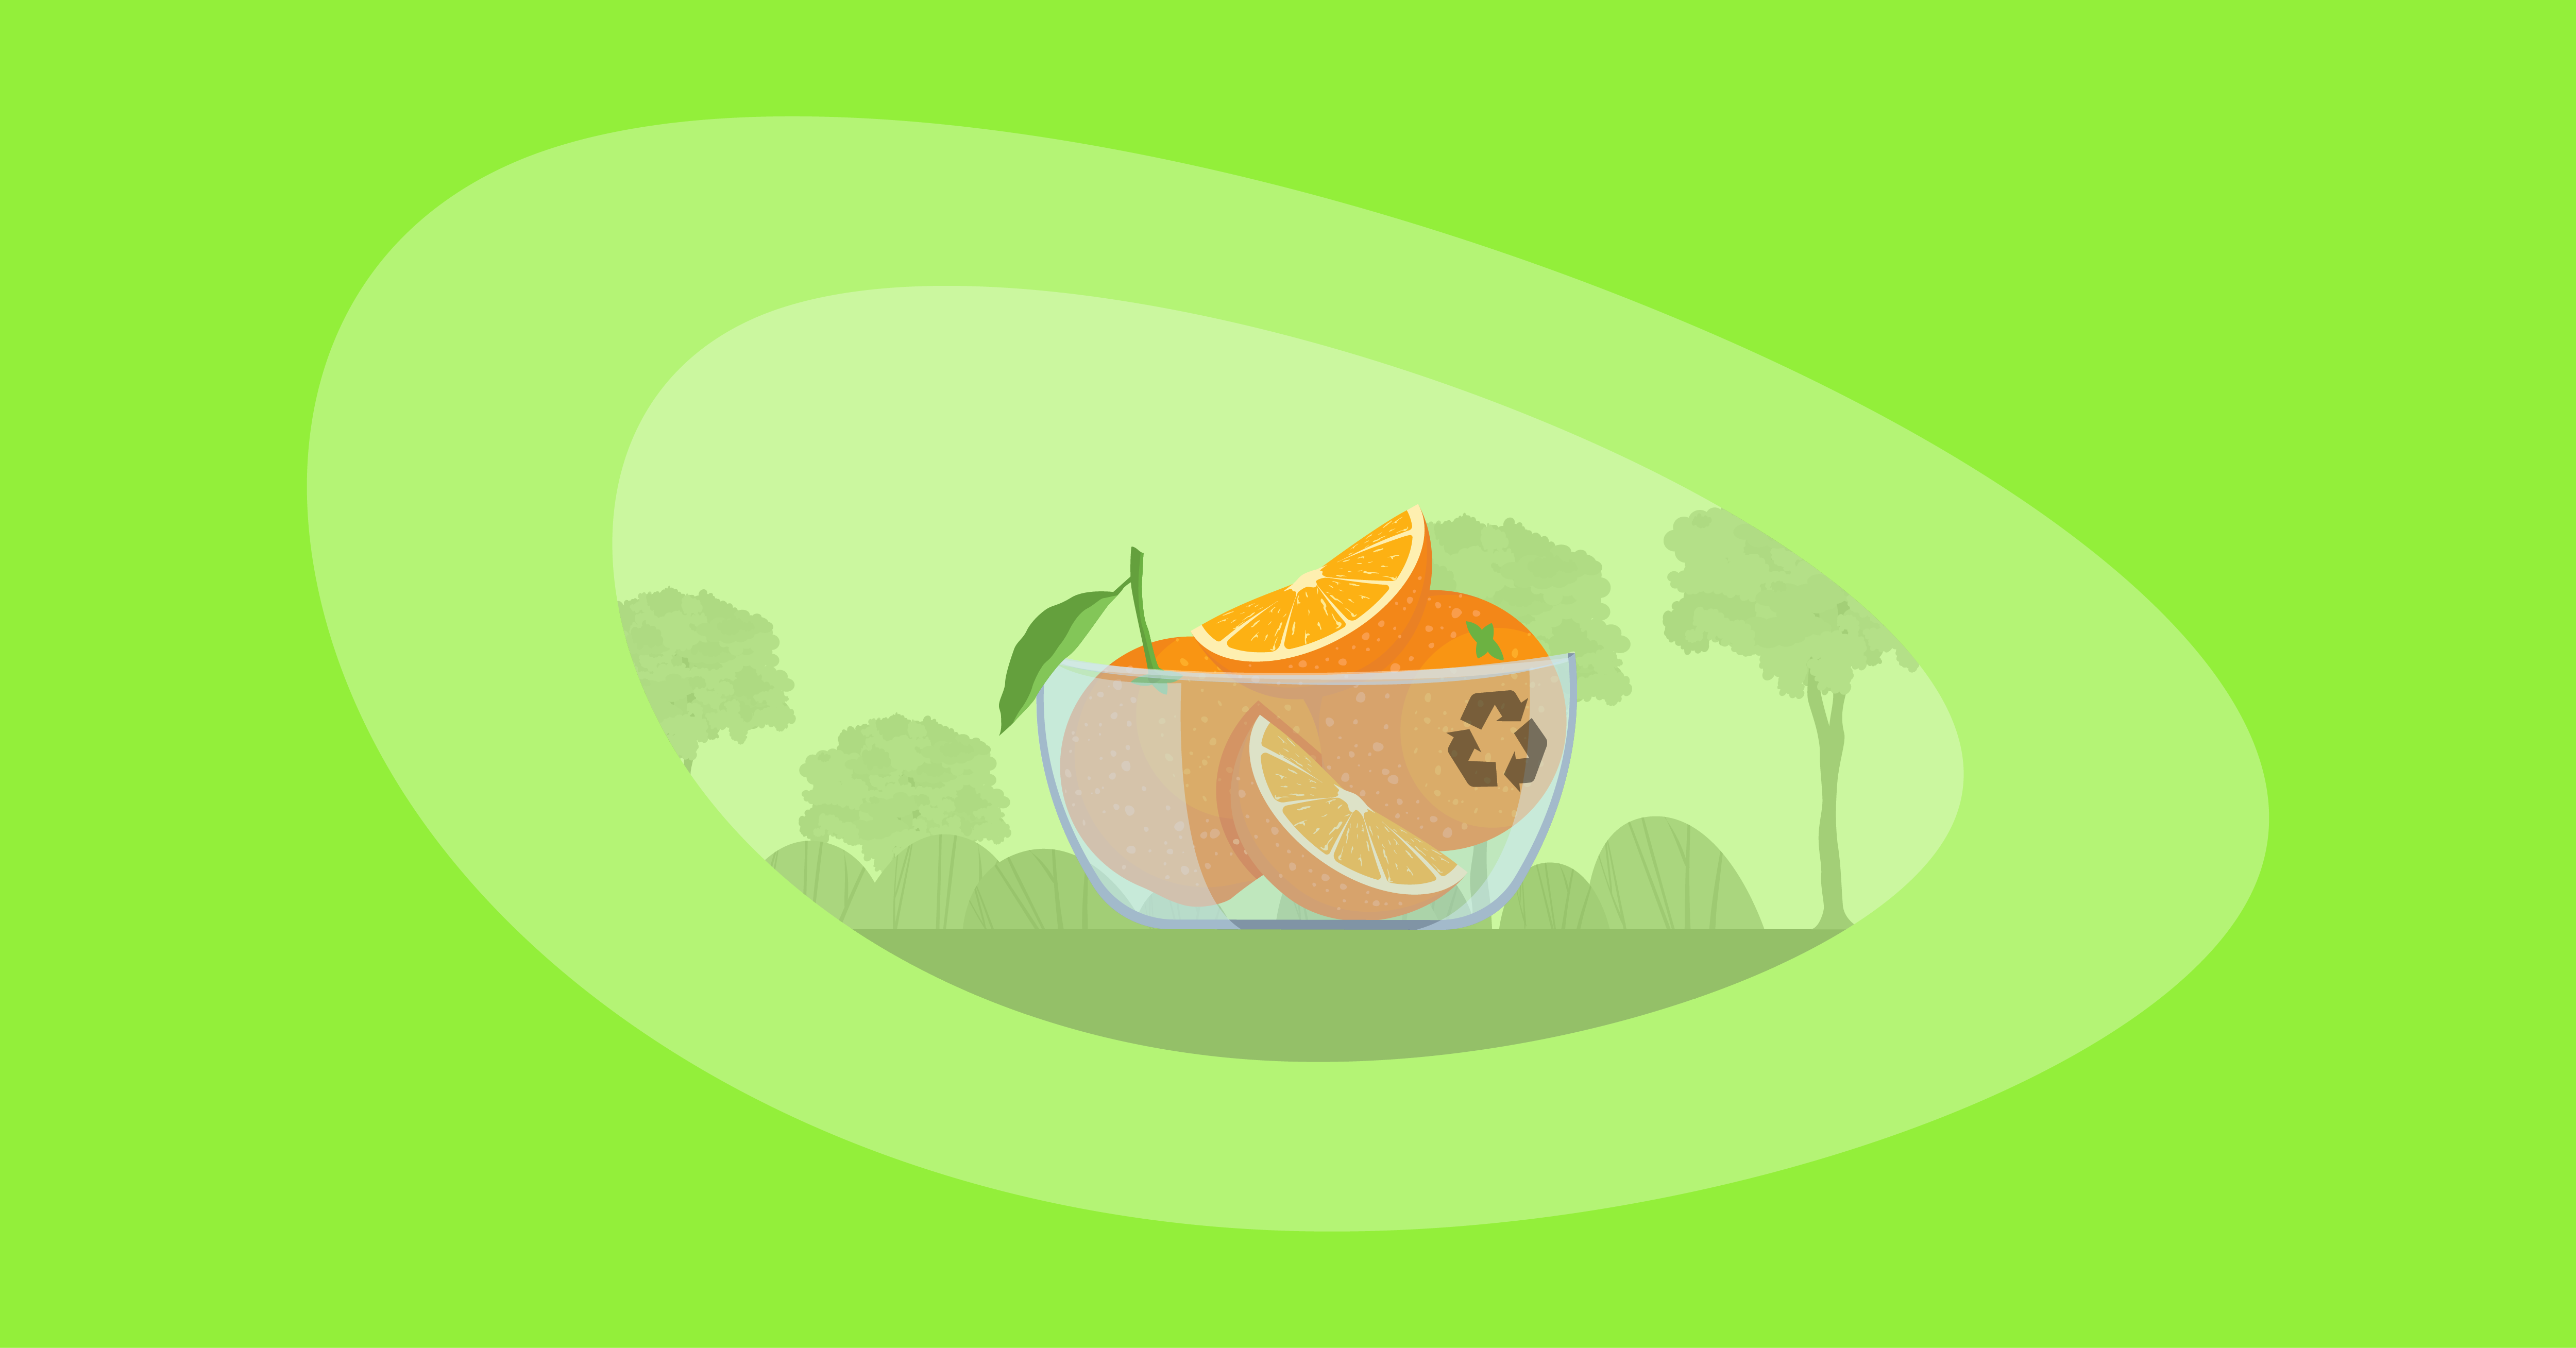 Illustration of oranges inside a glass bowl